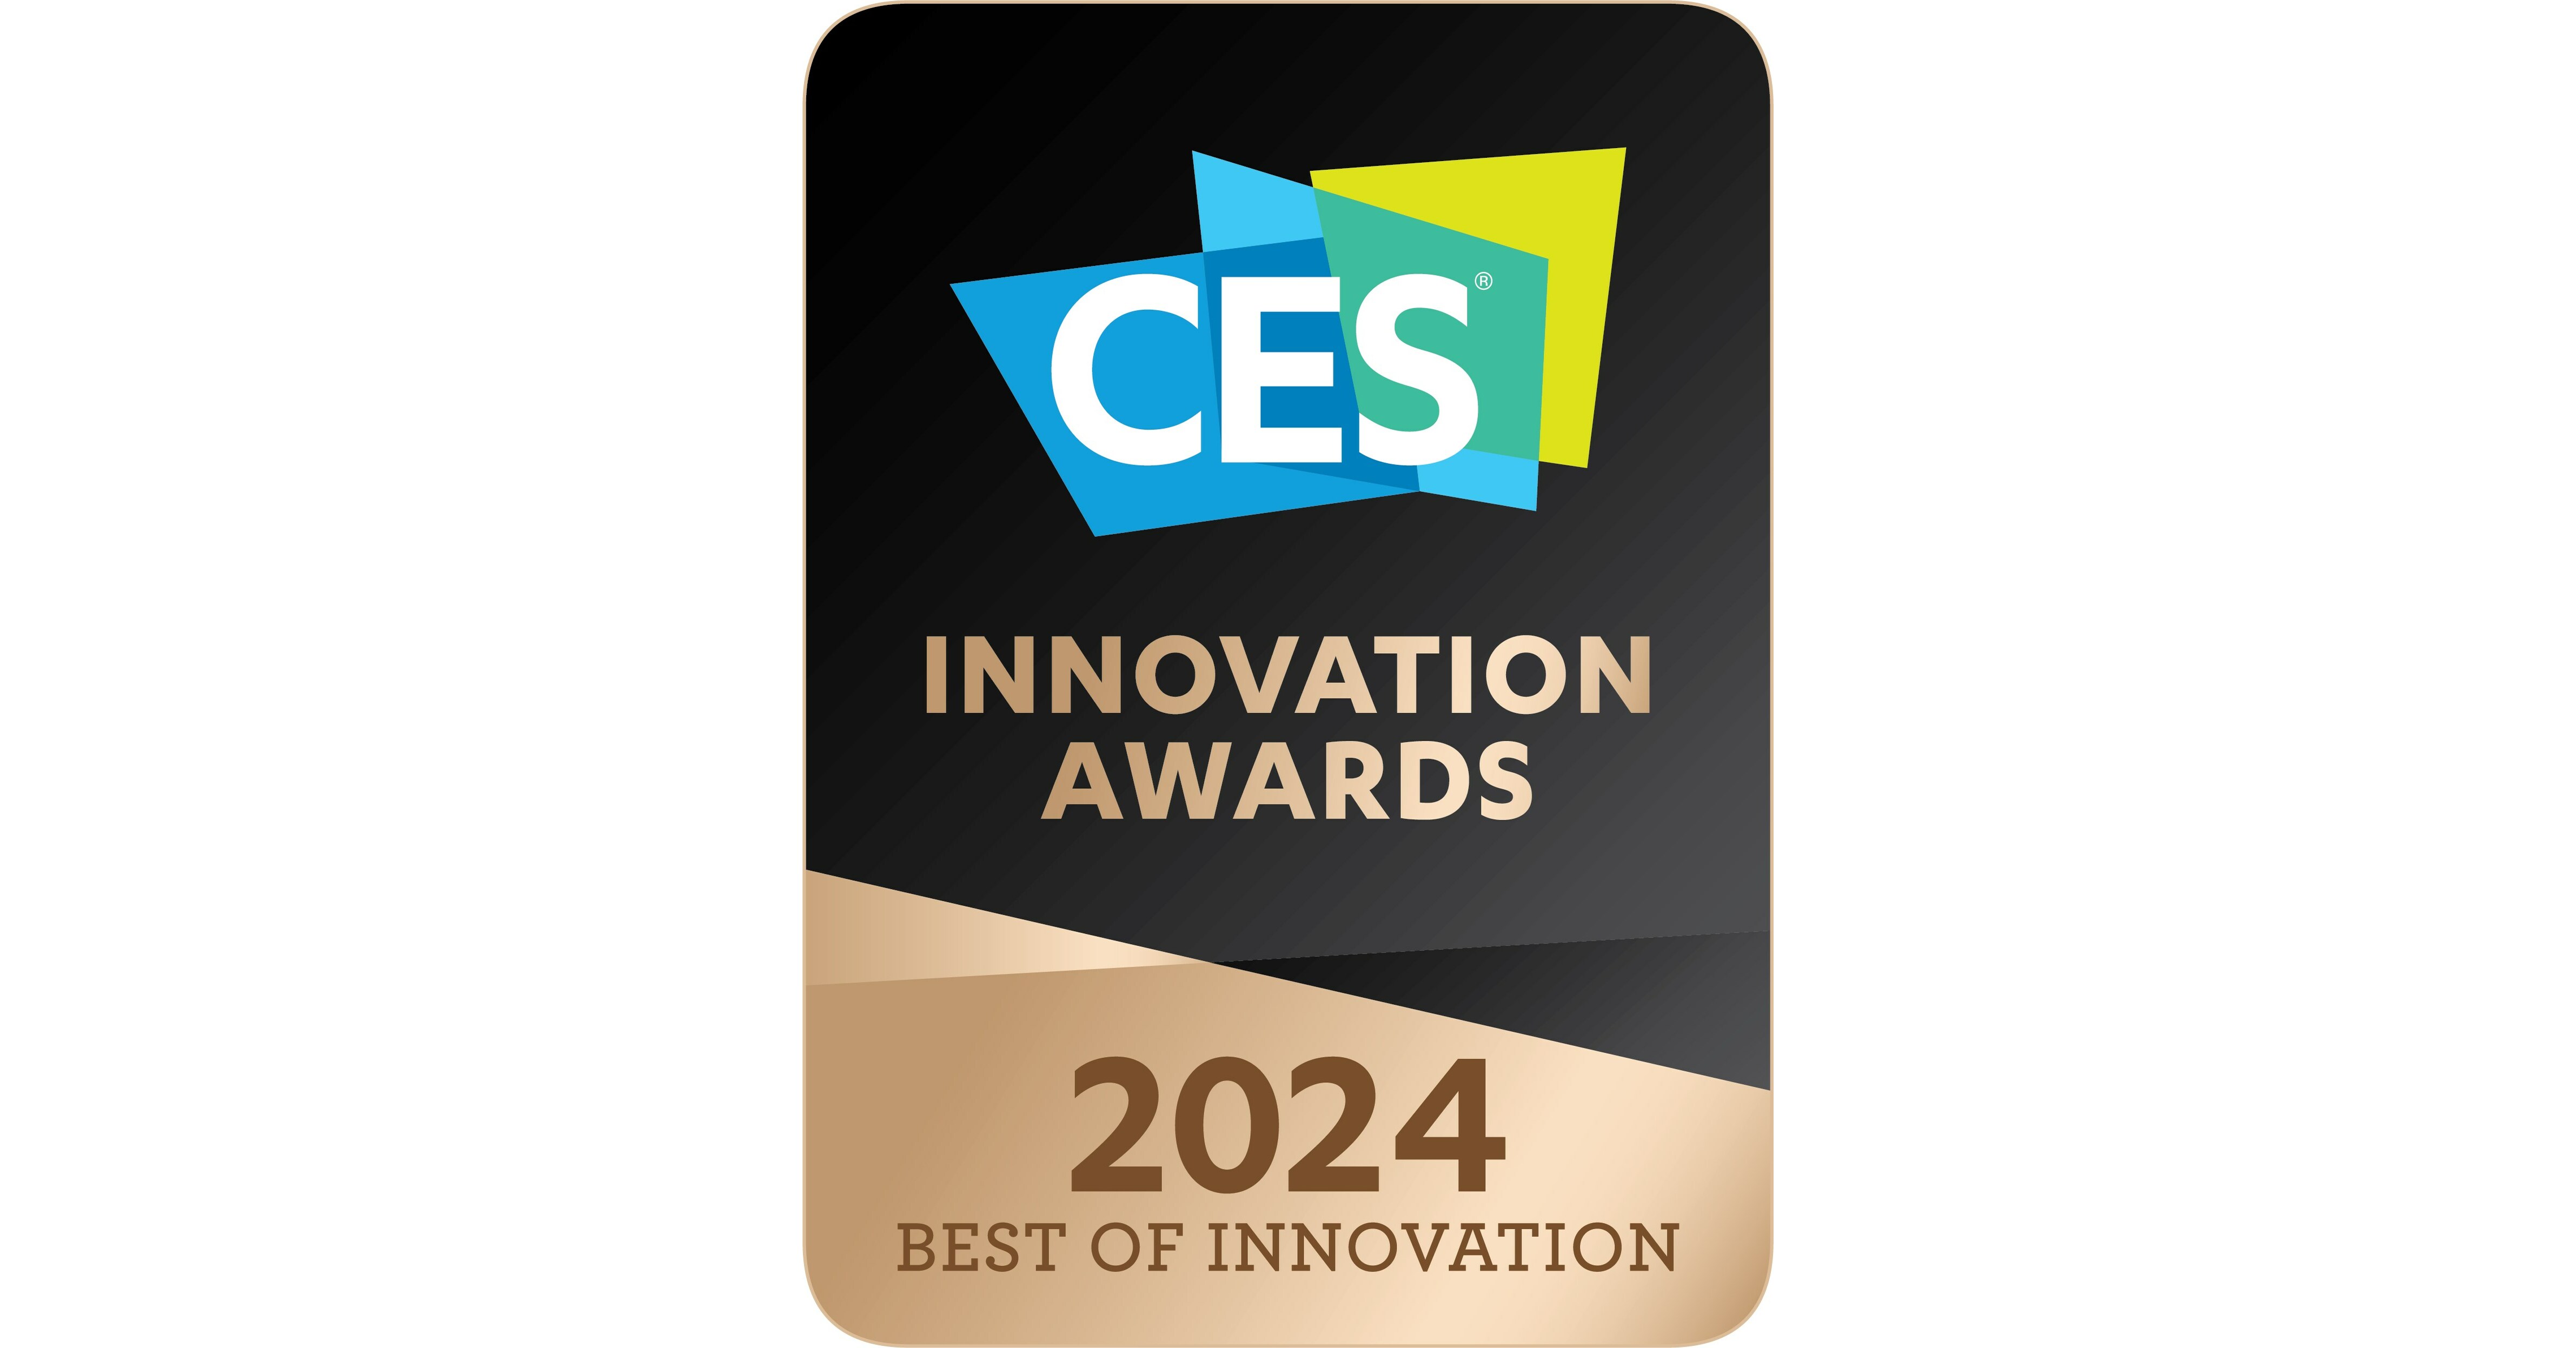 El compromiso de LG con la innovación fue reconocido con múltiples premios en CES 2024